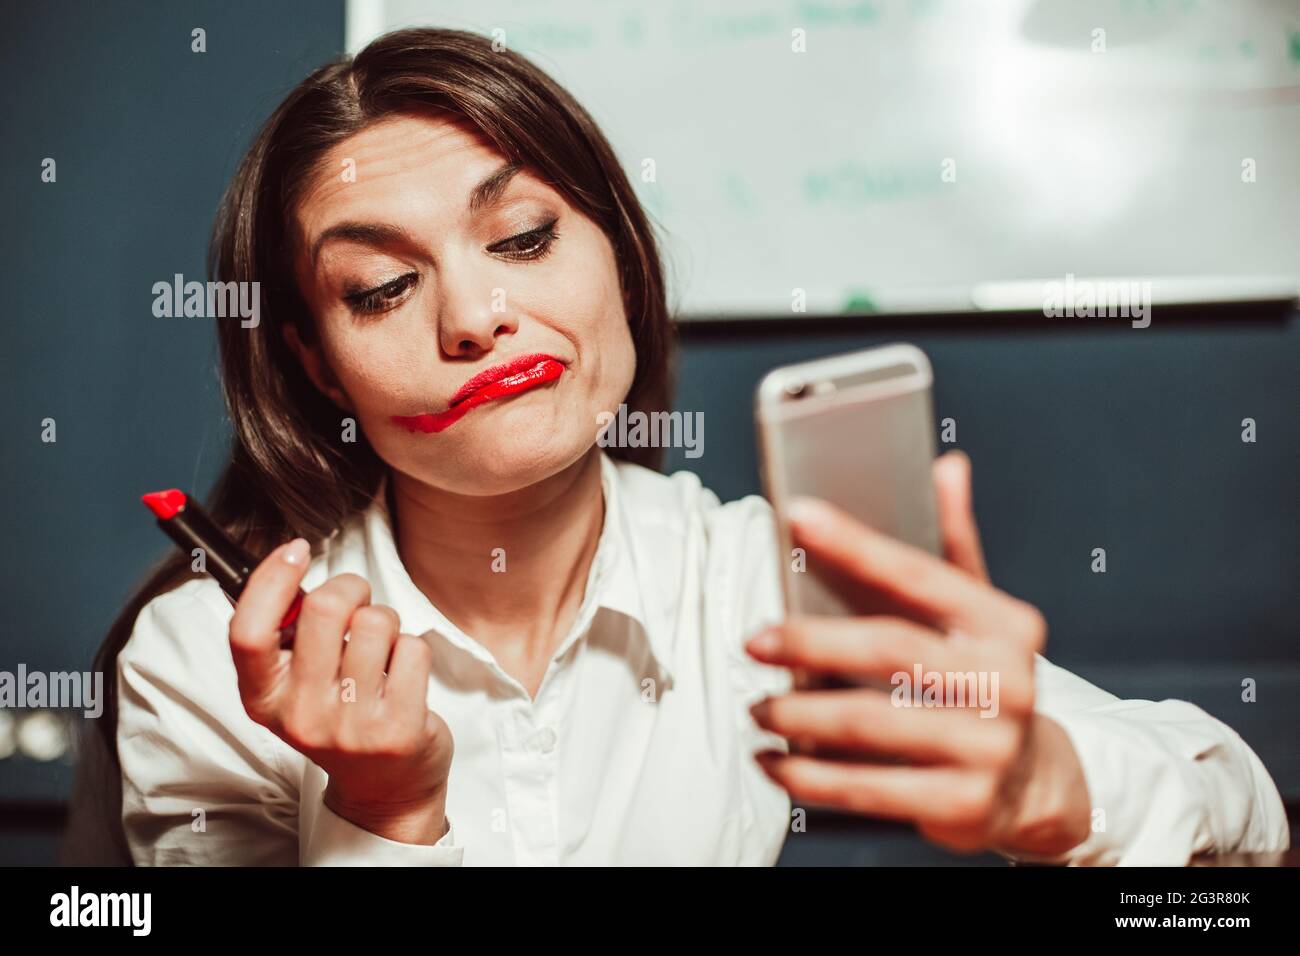 Verrückte Büromanagerin Geschäftsfrau, die am Arbeitsplatz mit einem Mobiltelefon statt mit einem Spiegel Make-up mit rotem Lippenstift macht. Getönte imag Stockfoto